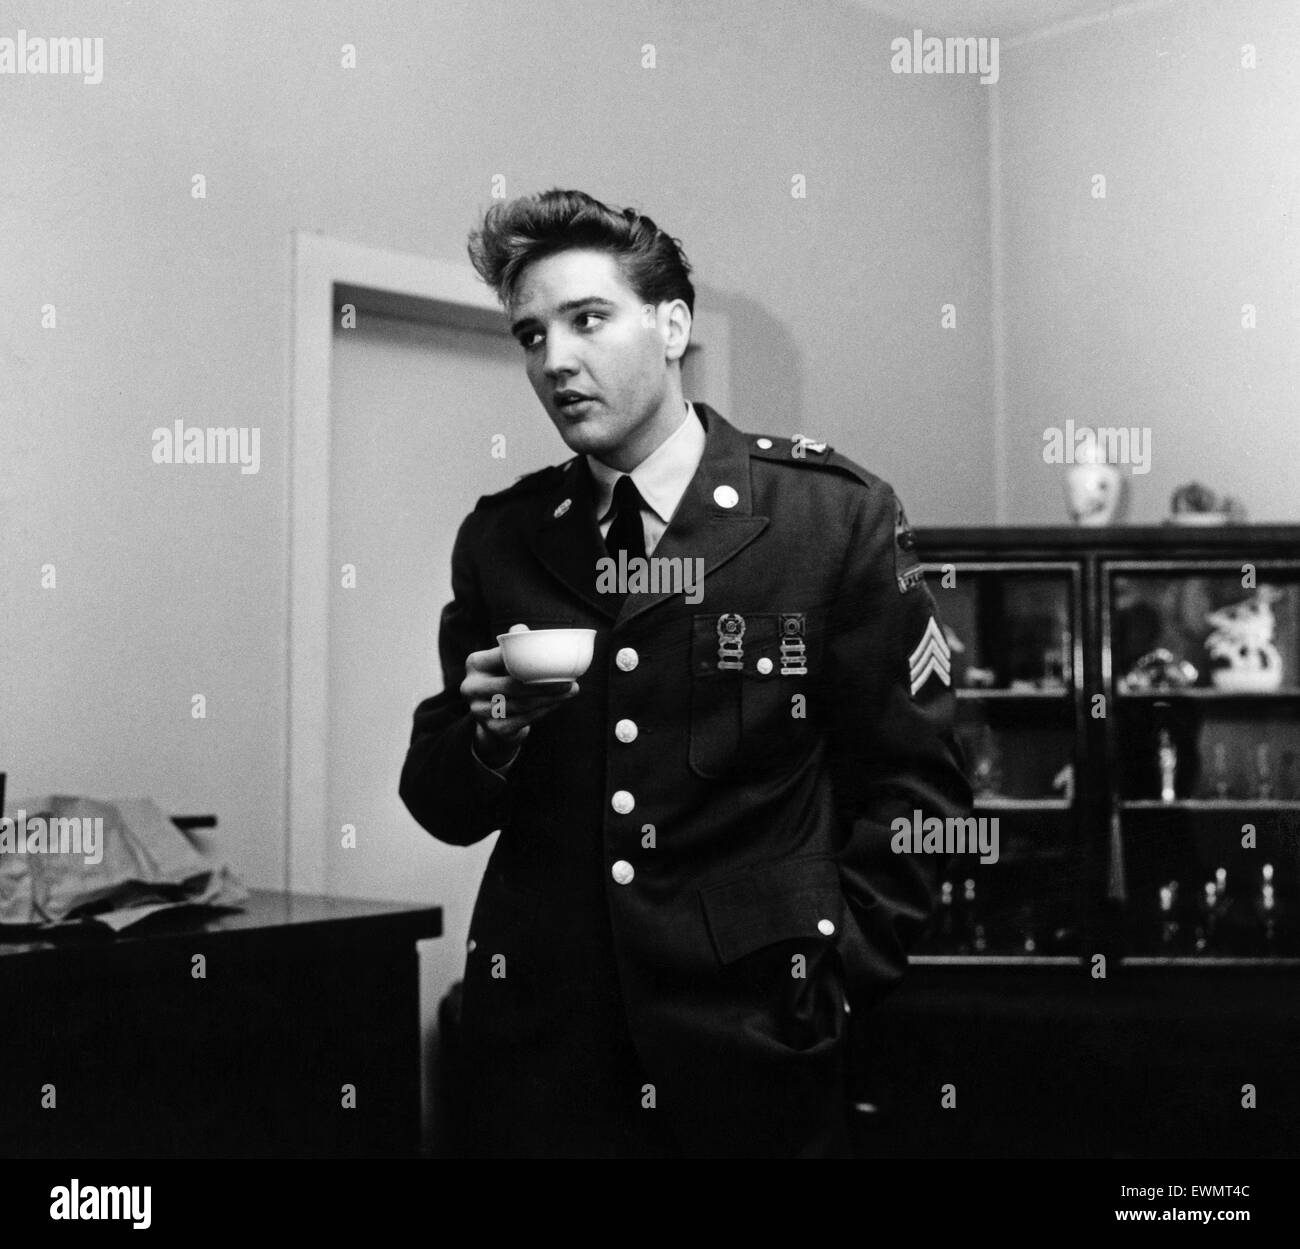 American rock and roll Elvis Presley chanteur et musicien représenté portant des uniformes de l'armée avant d'assister à une conférence de presse en Allemagne. Mars 1960. Banque D'Images